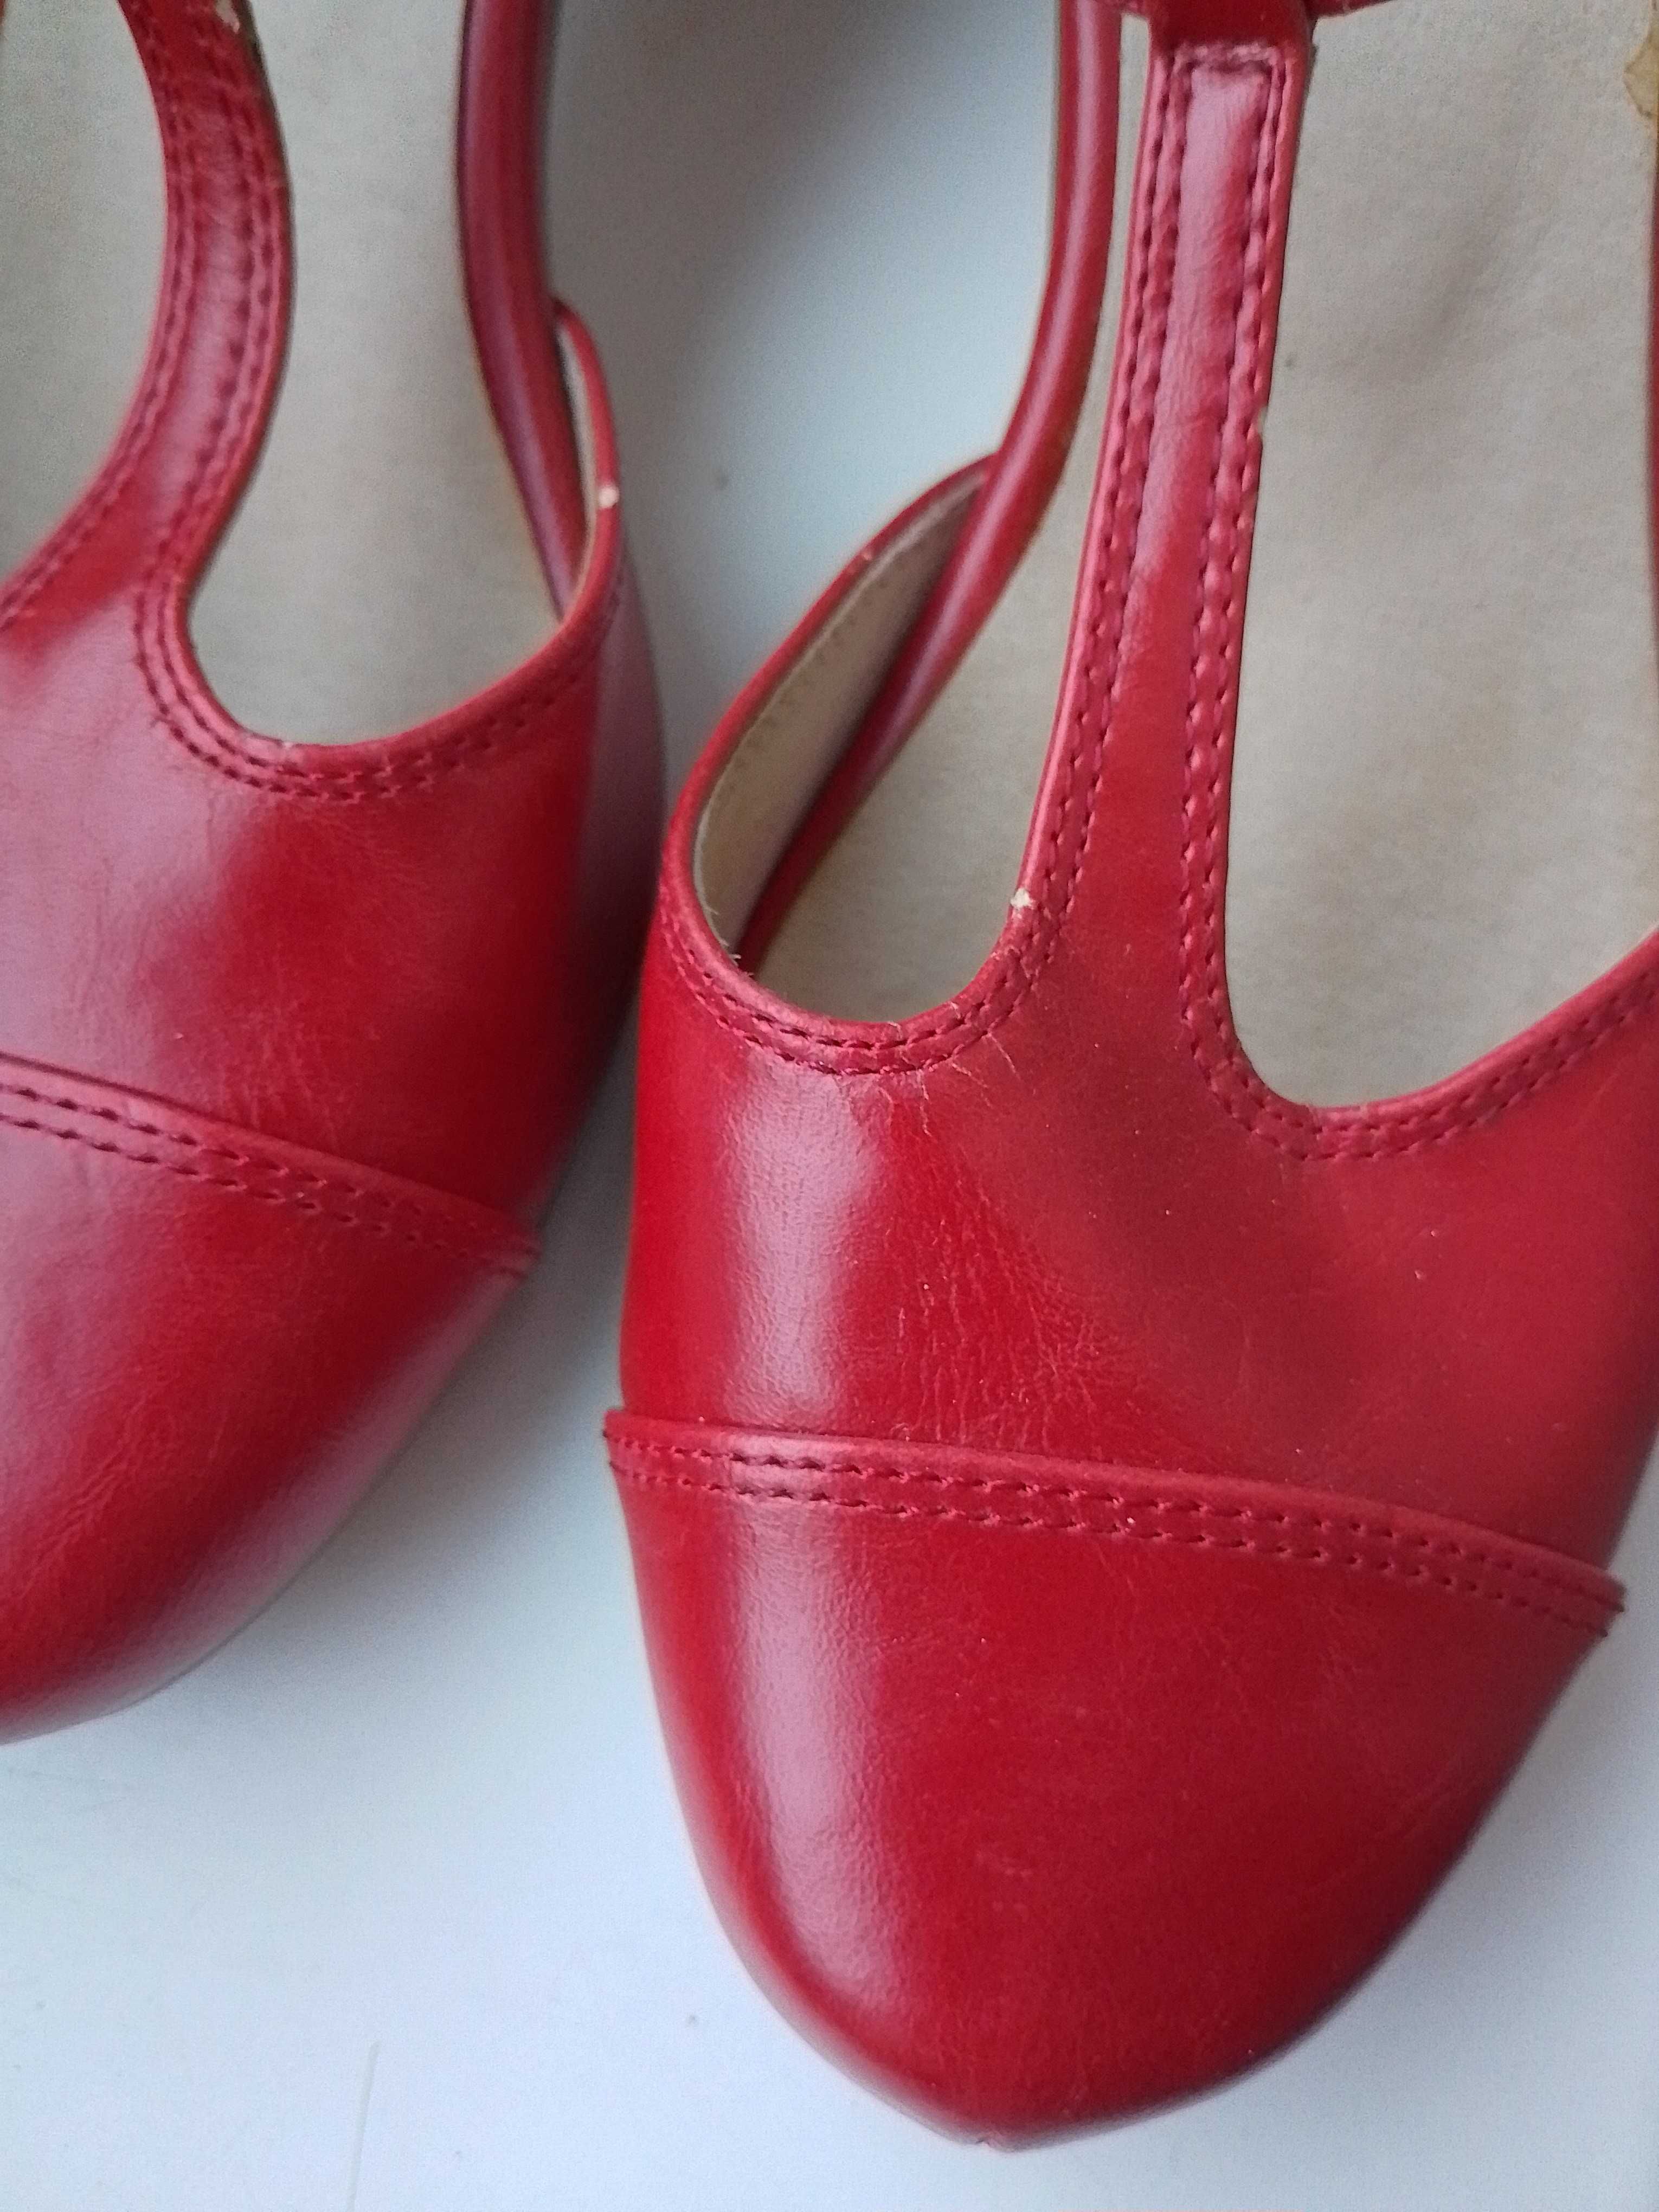 Туфли красные размер 38,5 - 39 очень удобные